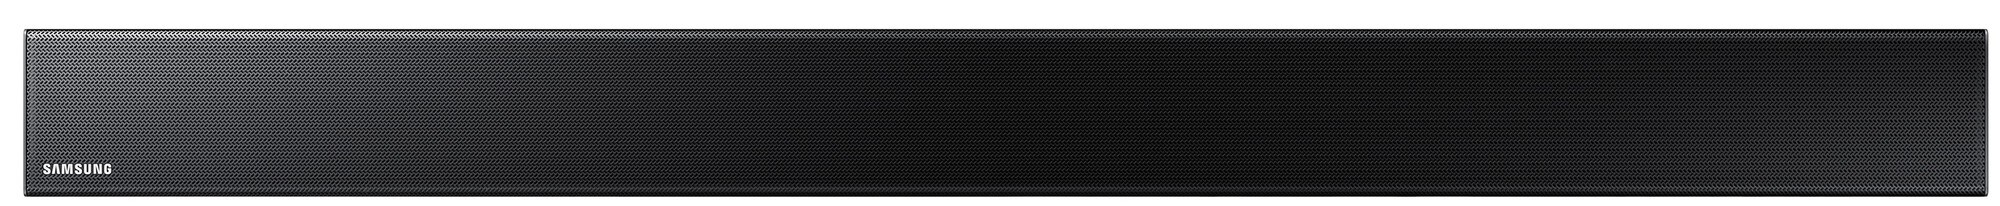 munching Abnorm Udvidelse Samsung 3.1 soundbar HW-K560 - sort | Elgiganten